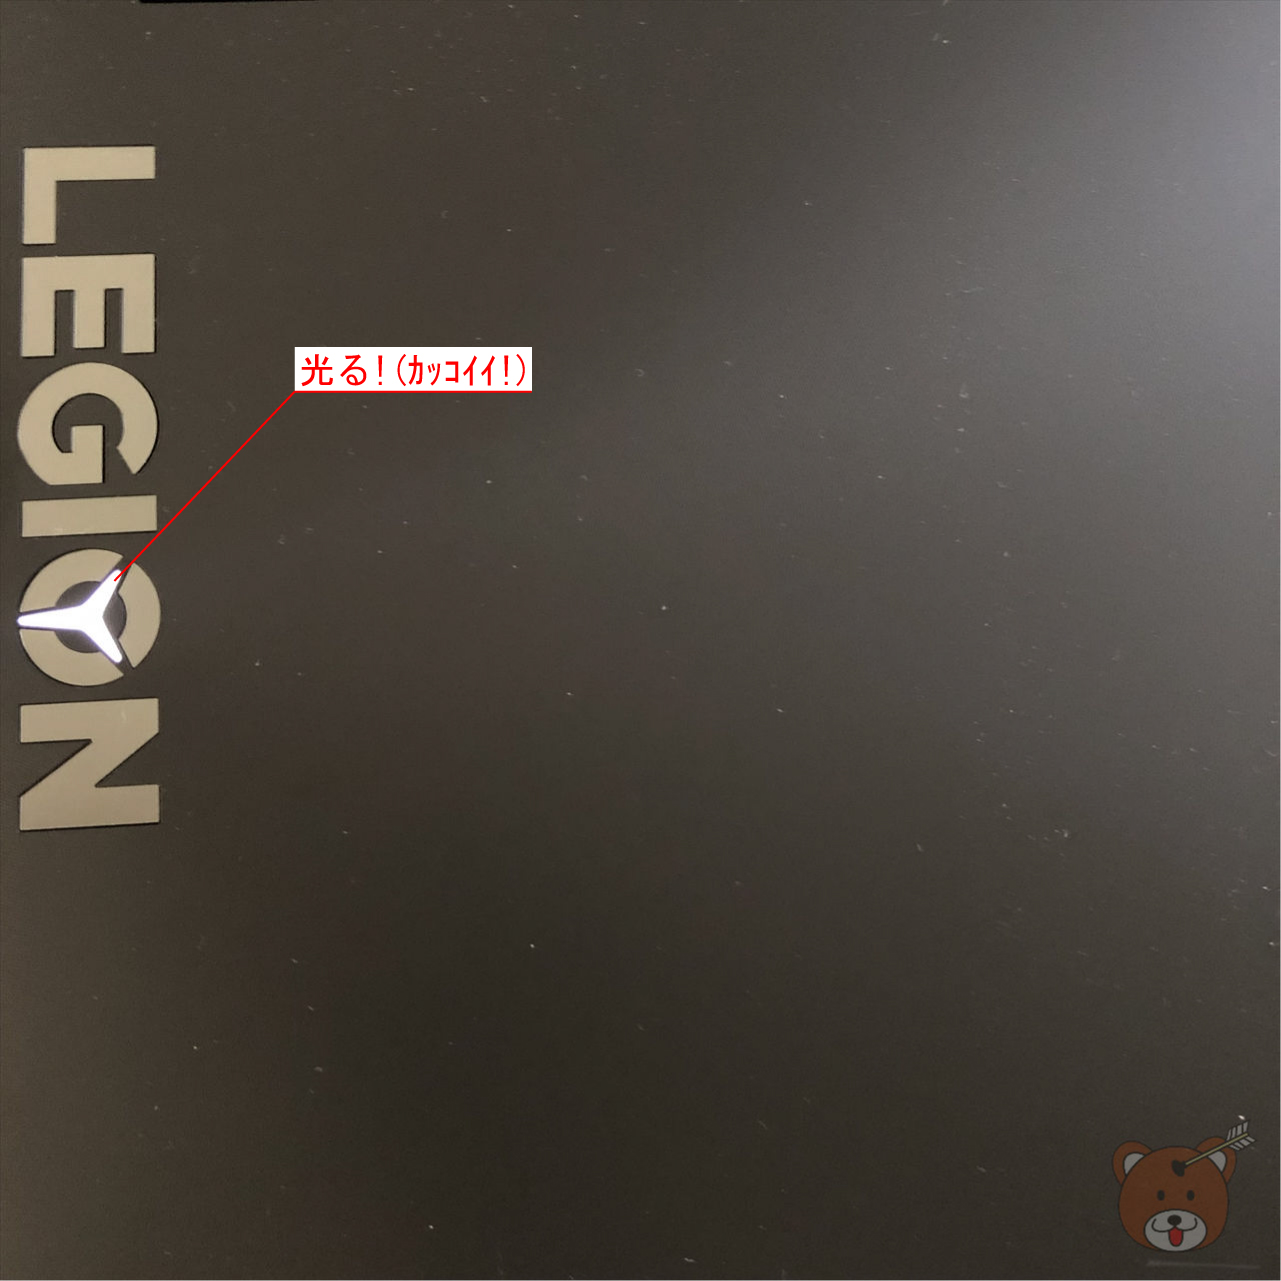 Legion Y540(17)天板イルミ